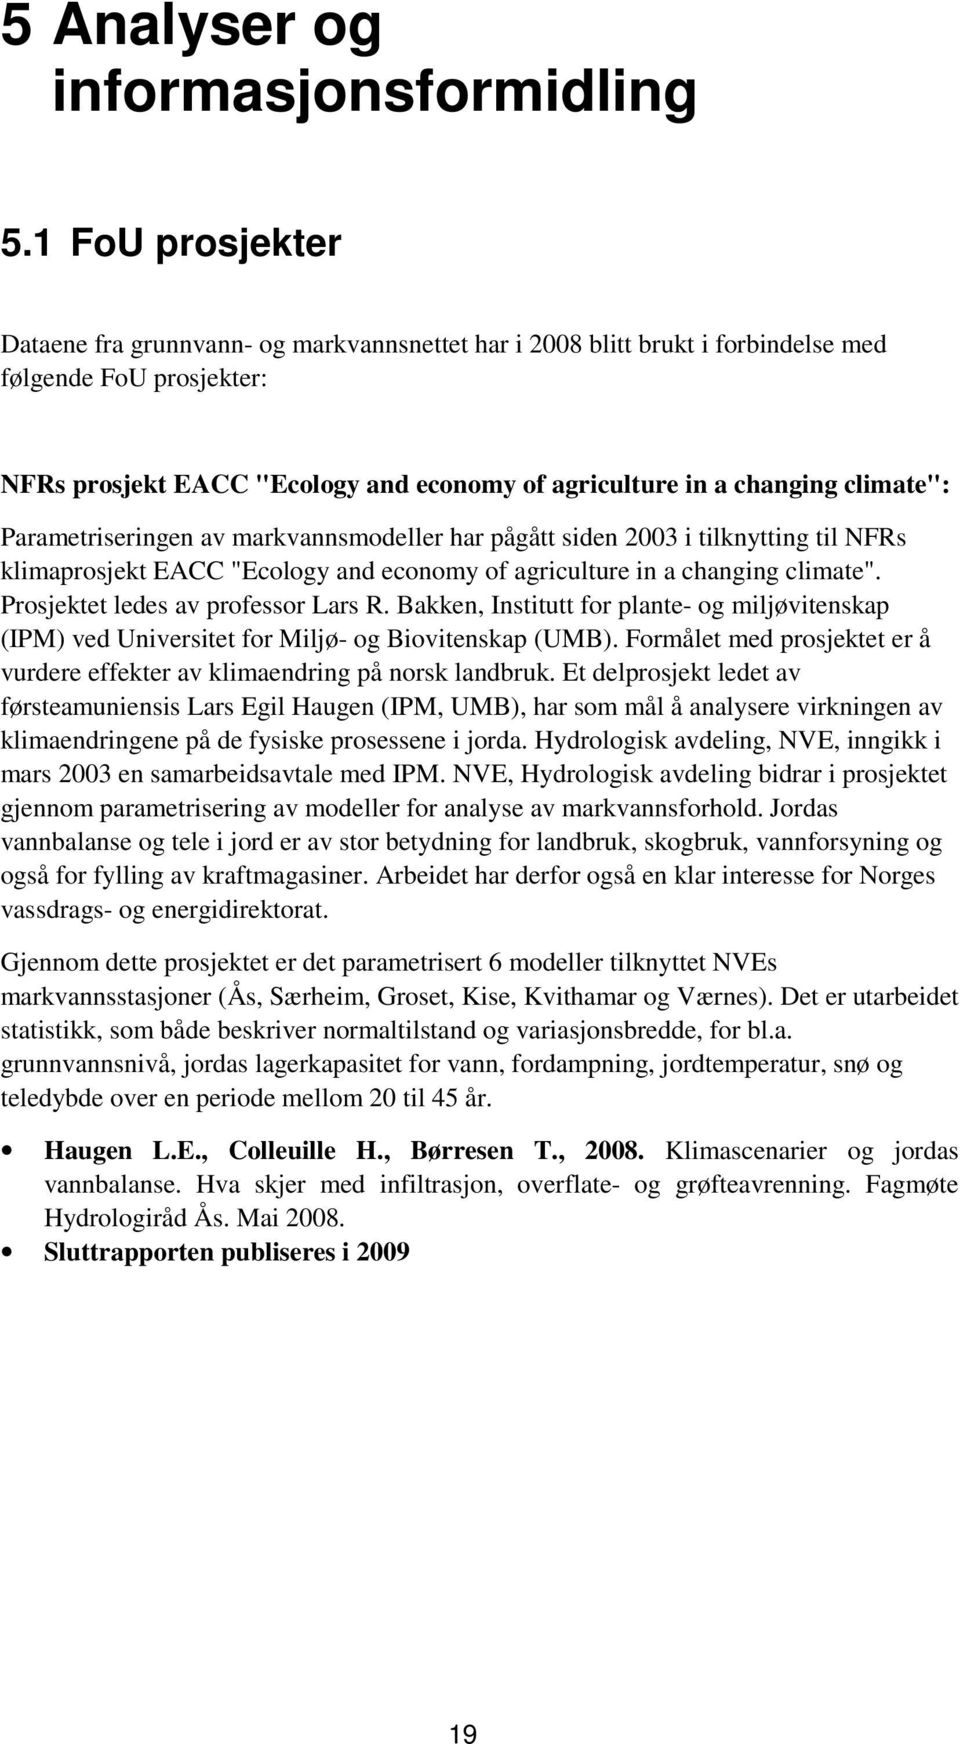 climate": Parametriseringen av markvannsmodeller har pågått siden 2003 i tilknytting til NFRs klimaprosjekt EACC "Ecology and economy of agriculture in a changing climate".